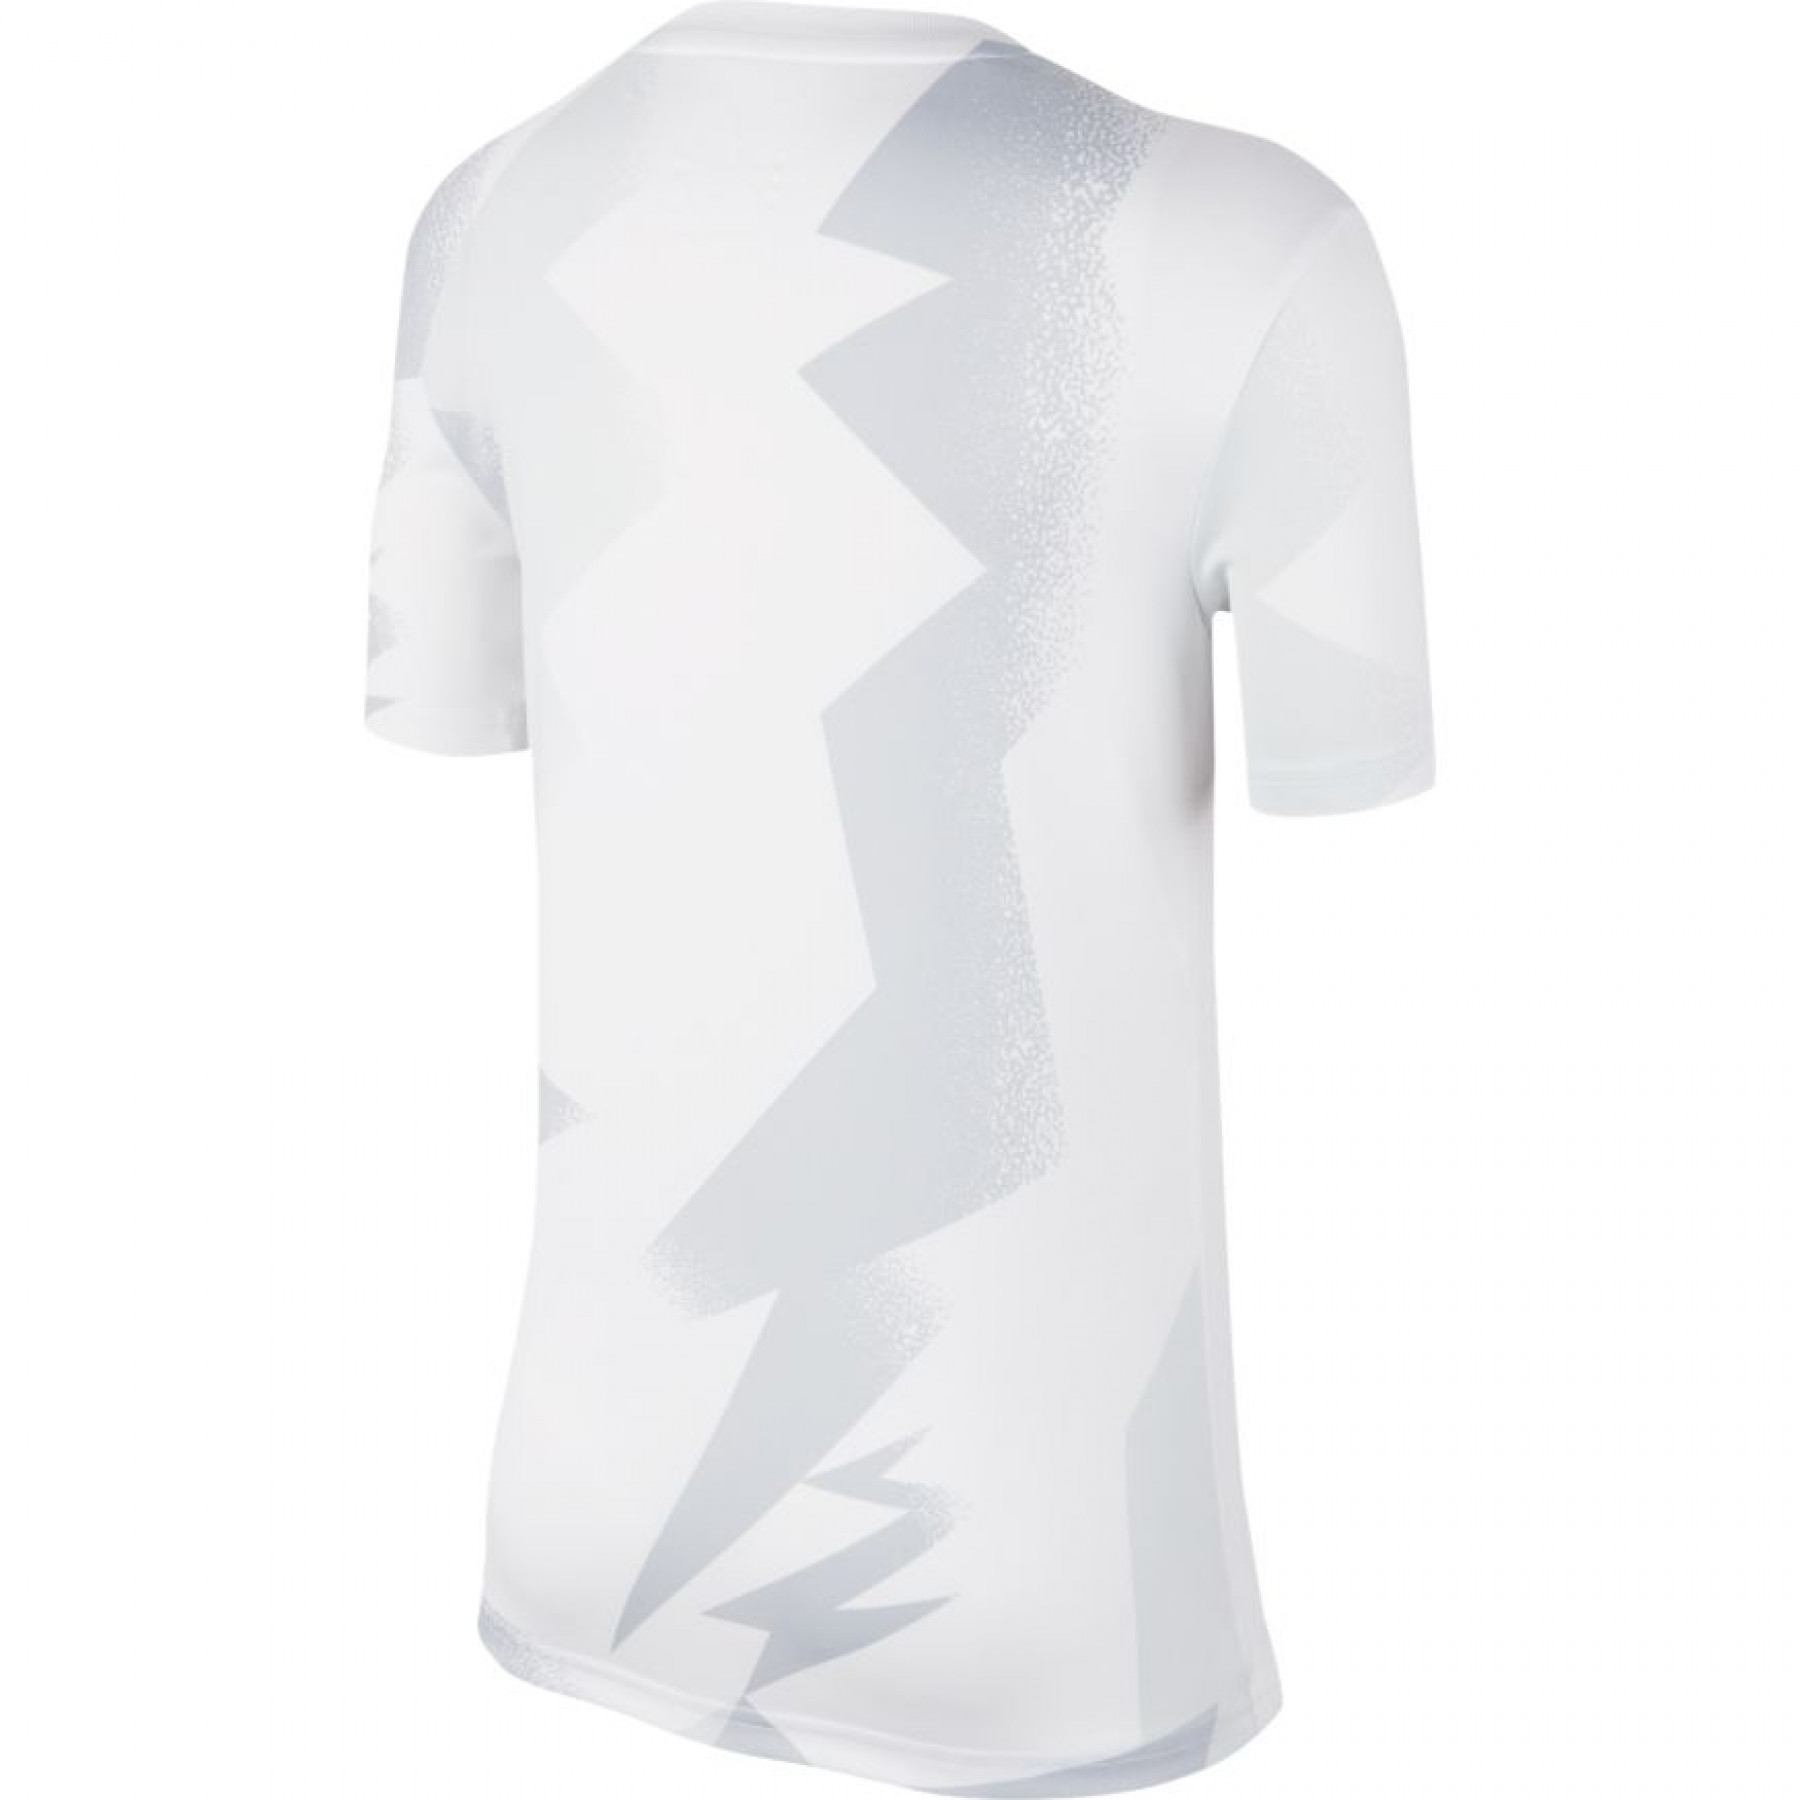 Camiseta para niños PSG Dri-FIT 2019/20